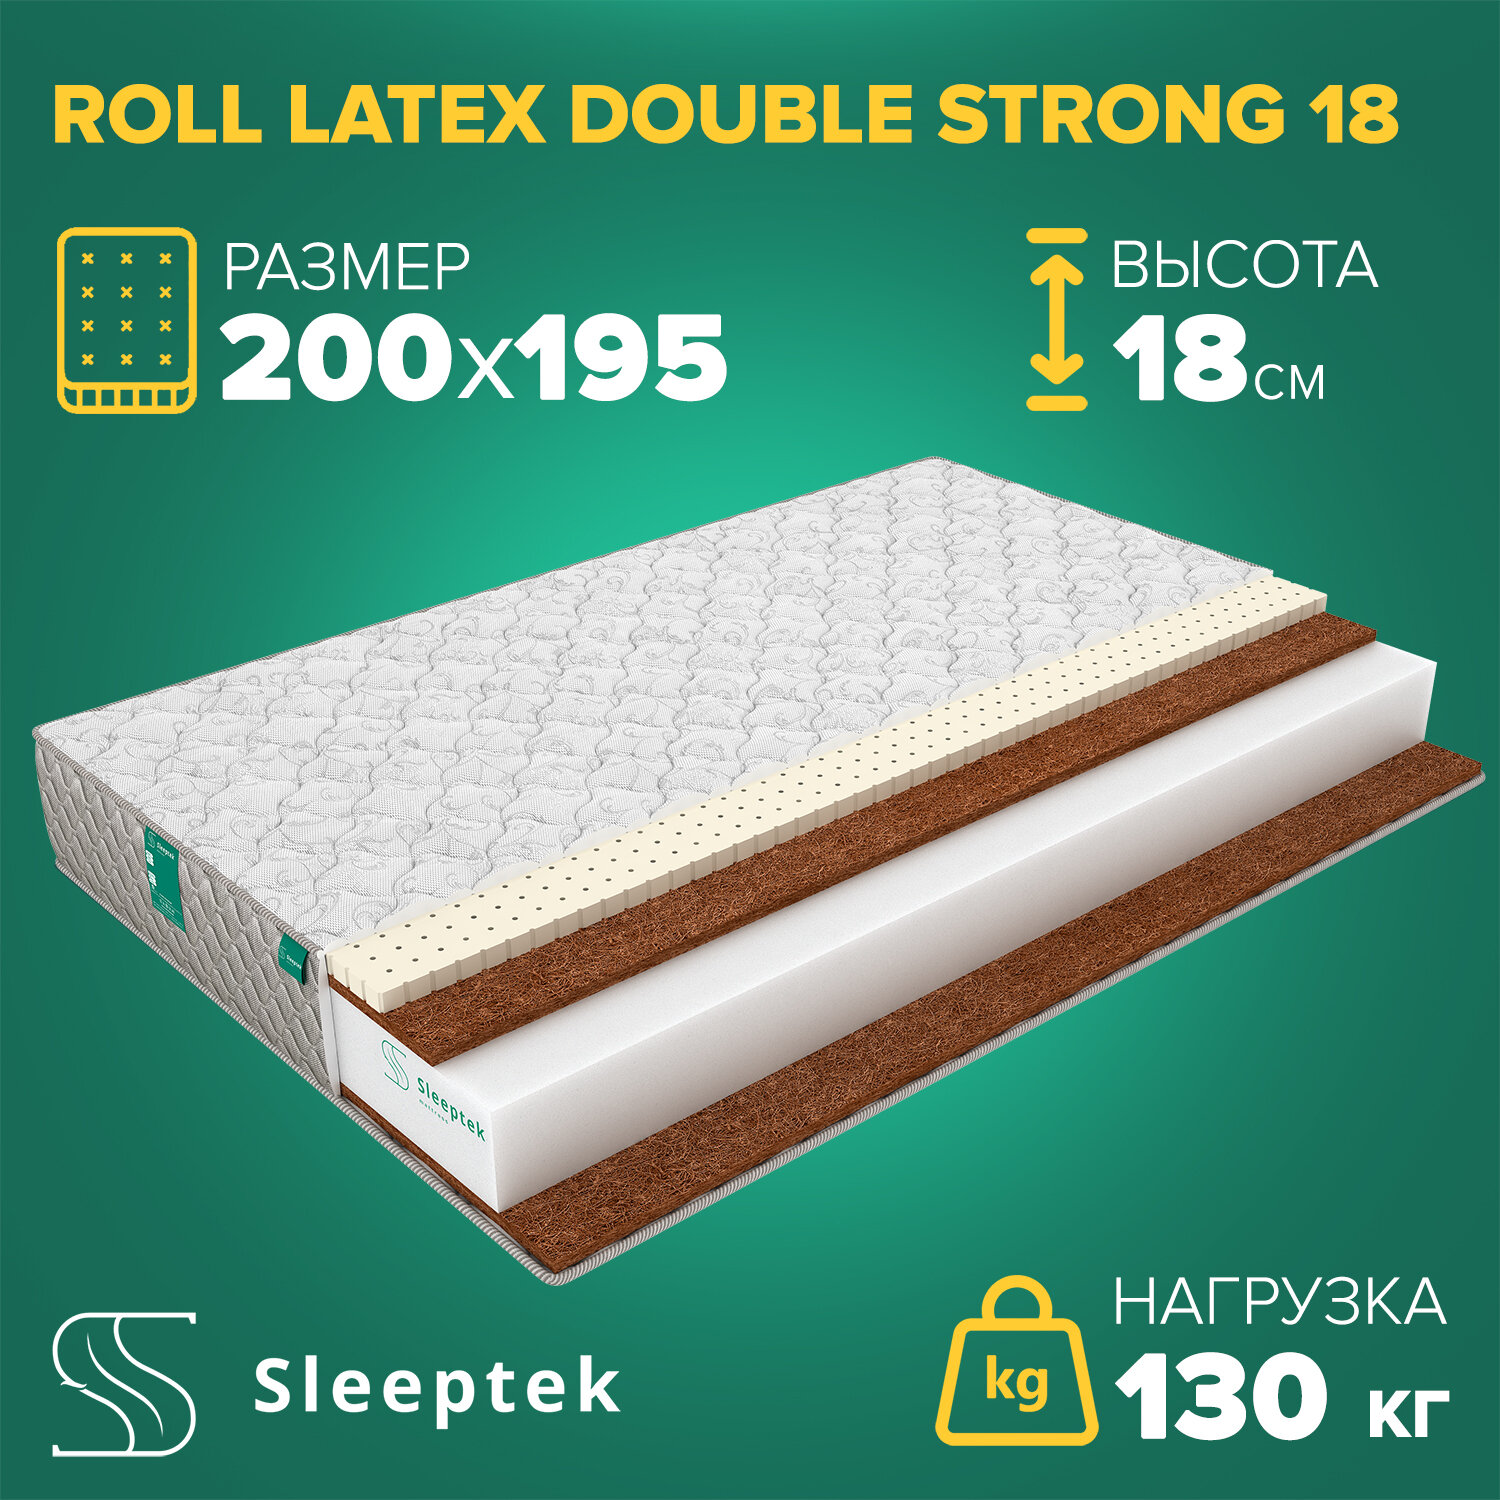 Матрас Sleeptek Roll Latex DoubleStrong 18 200х195